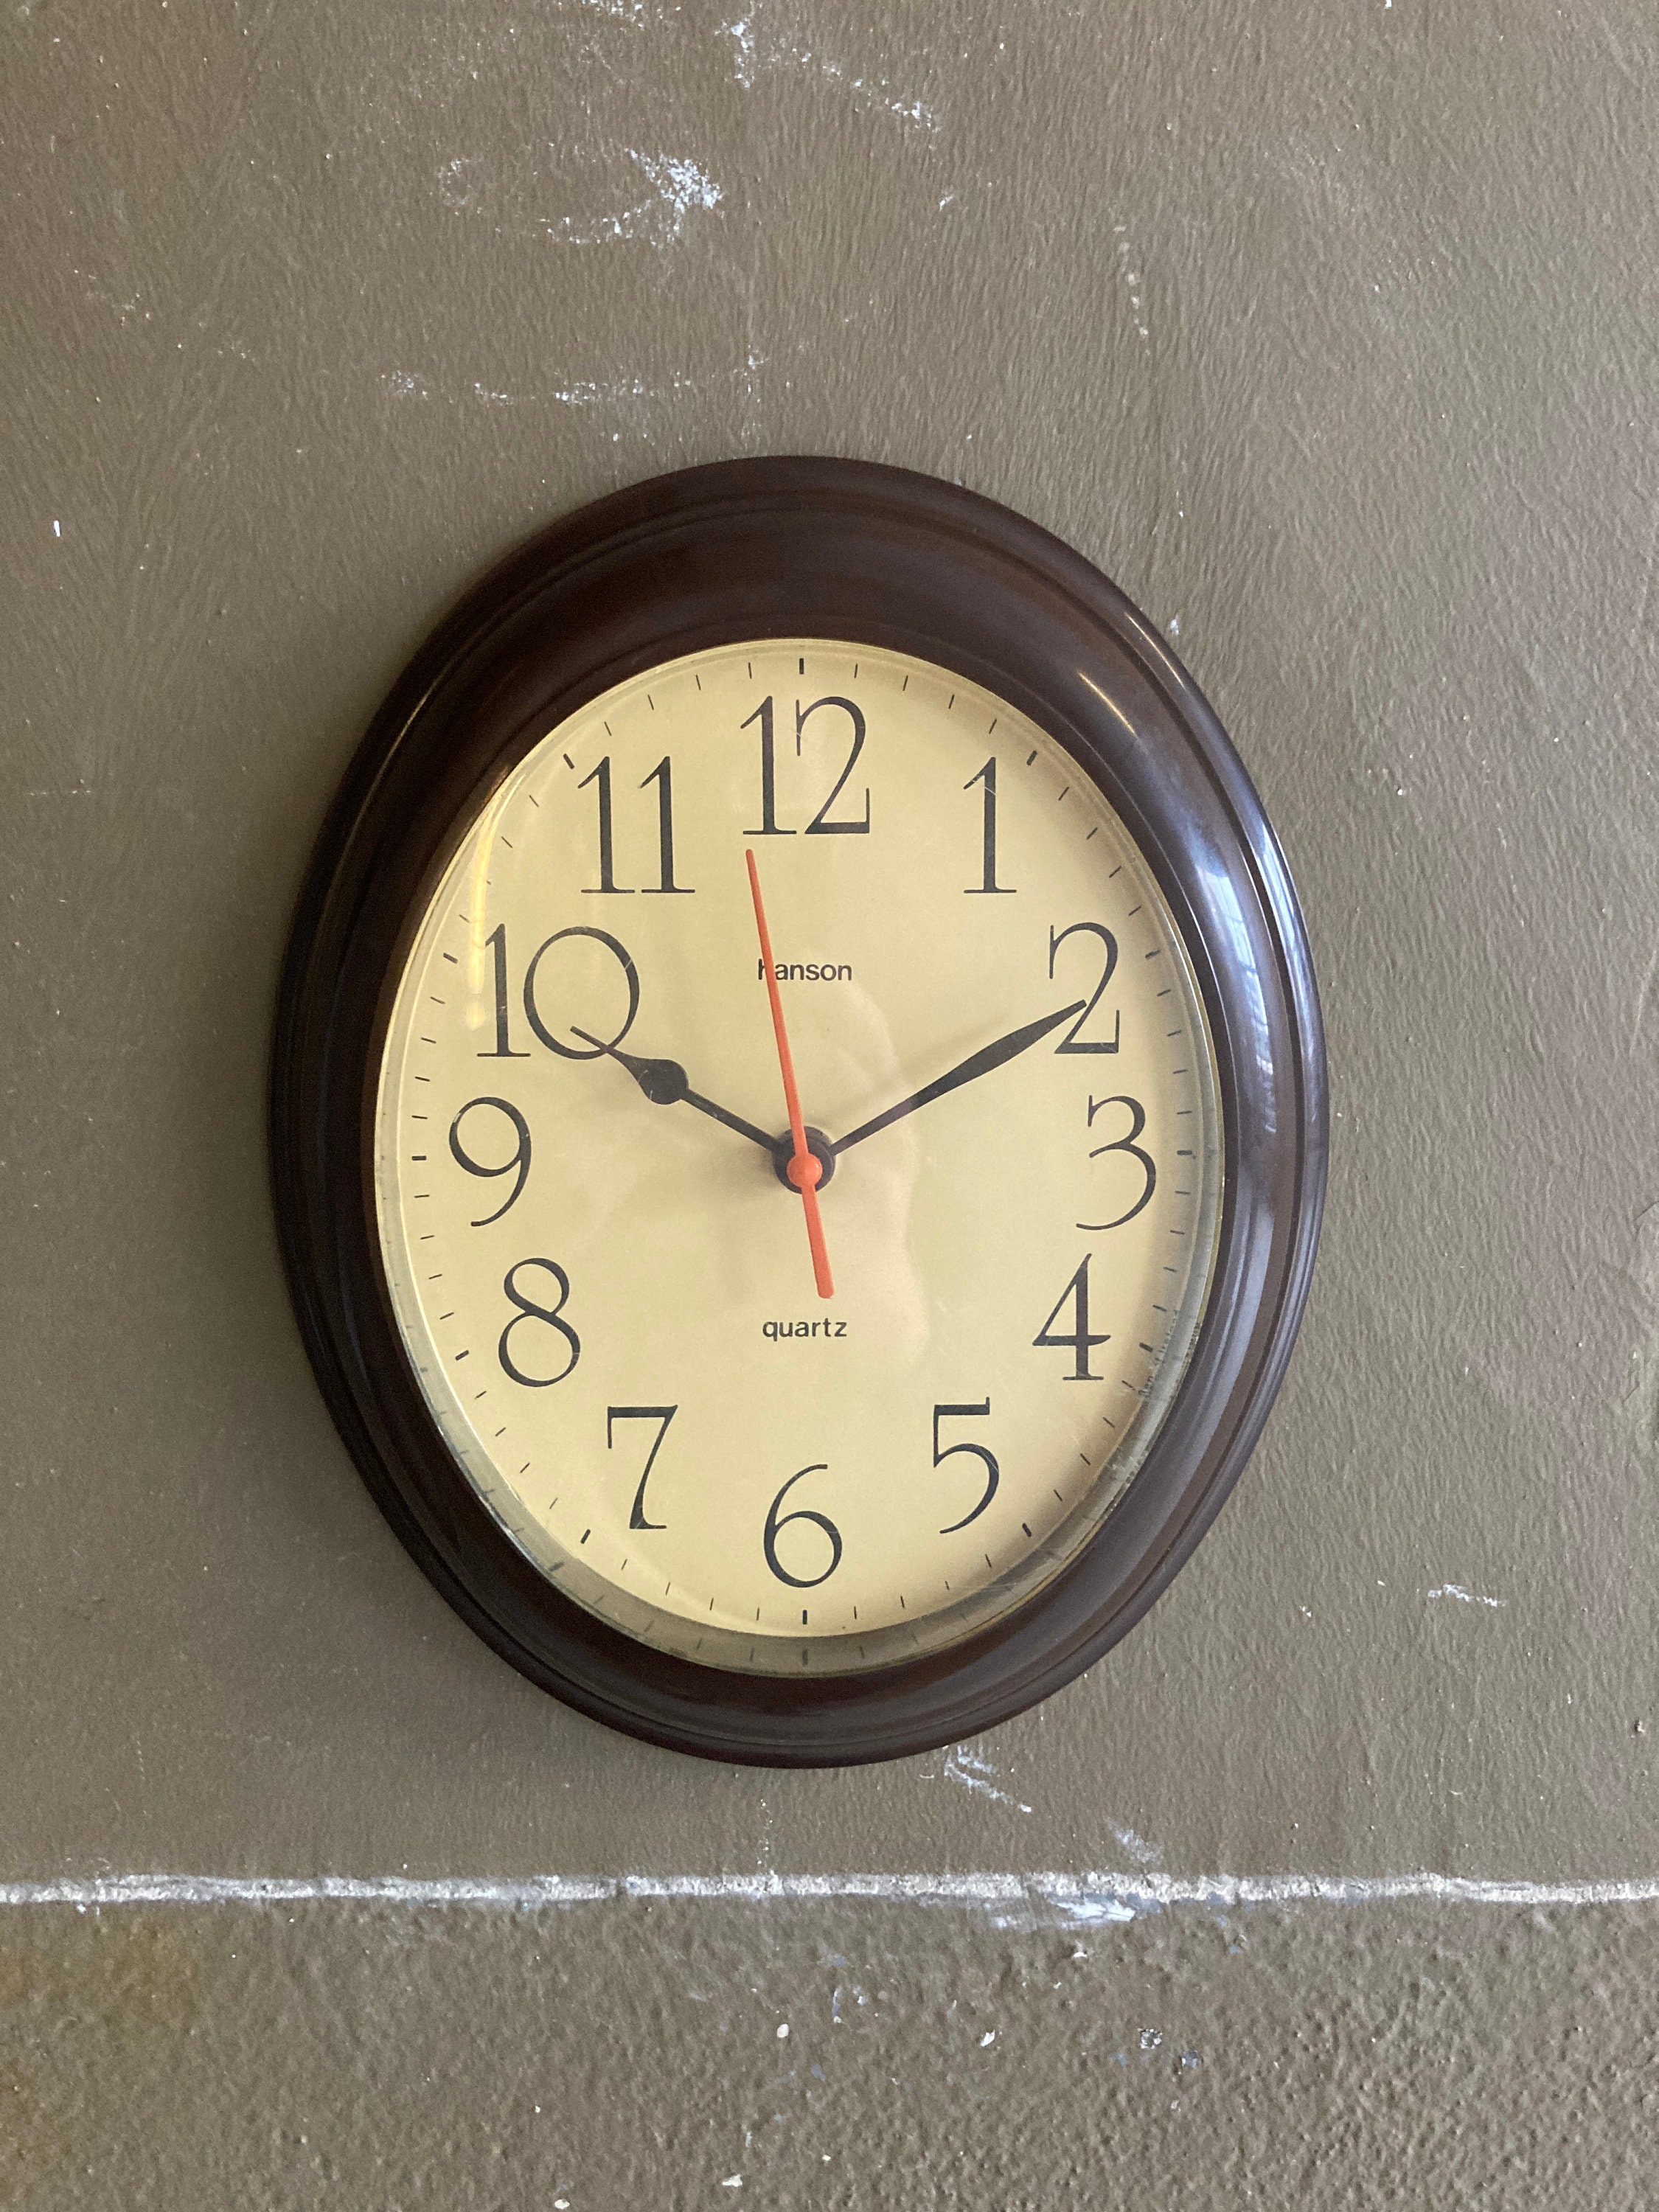 Oval Wall Clocks Etsy